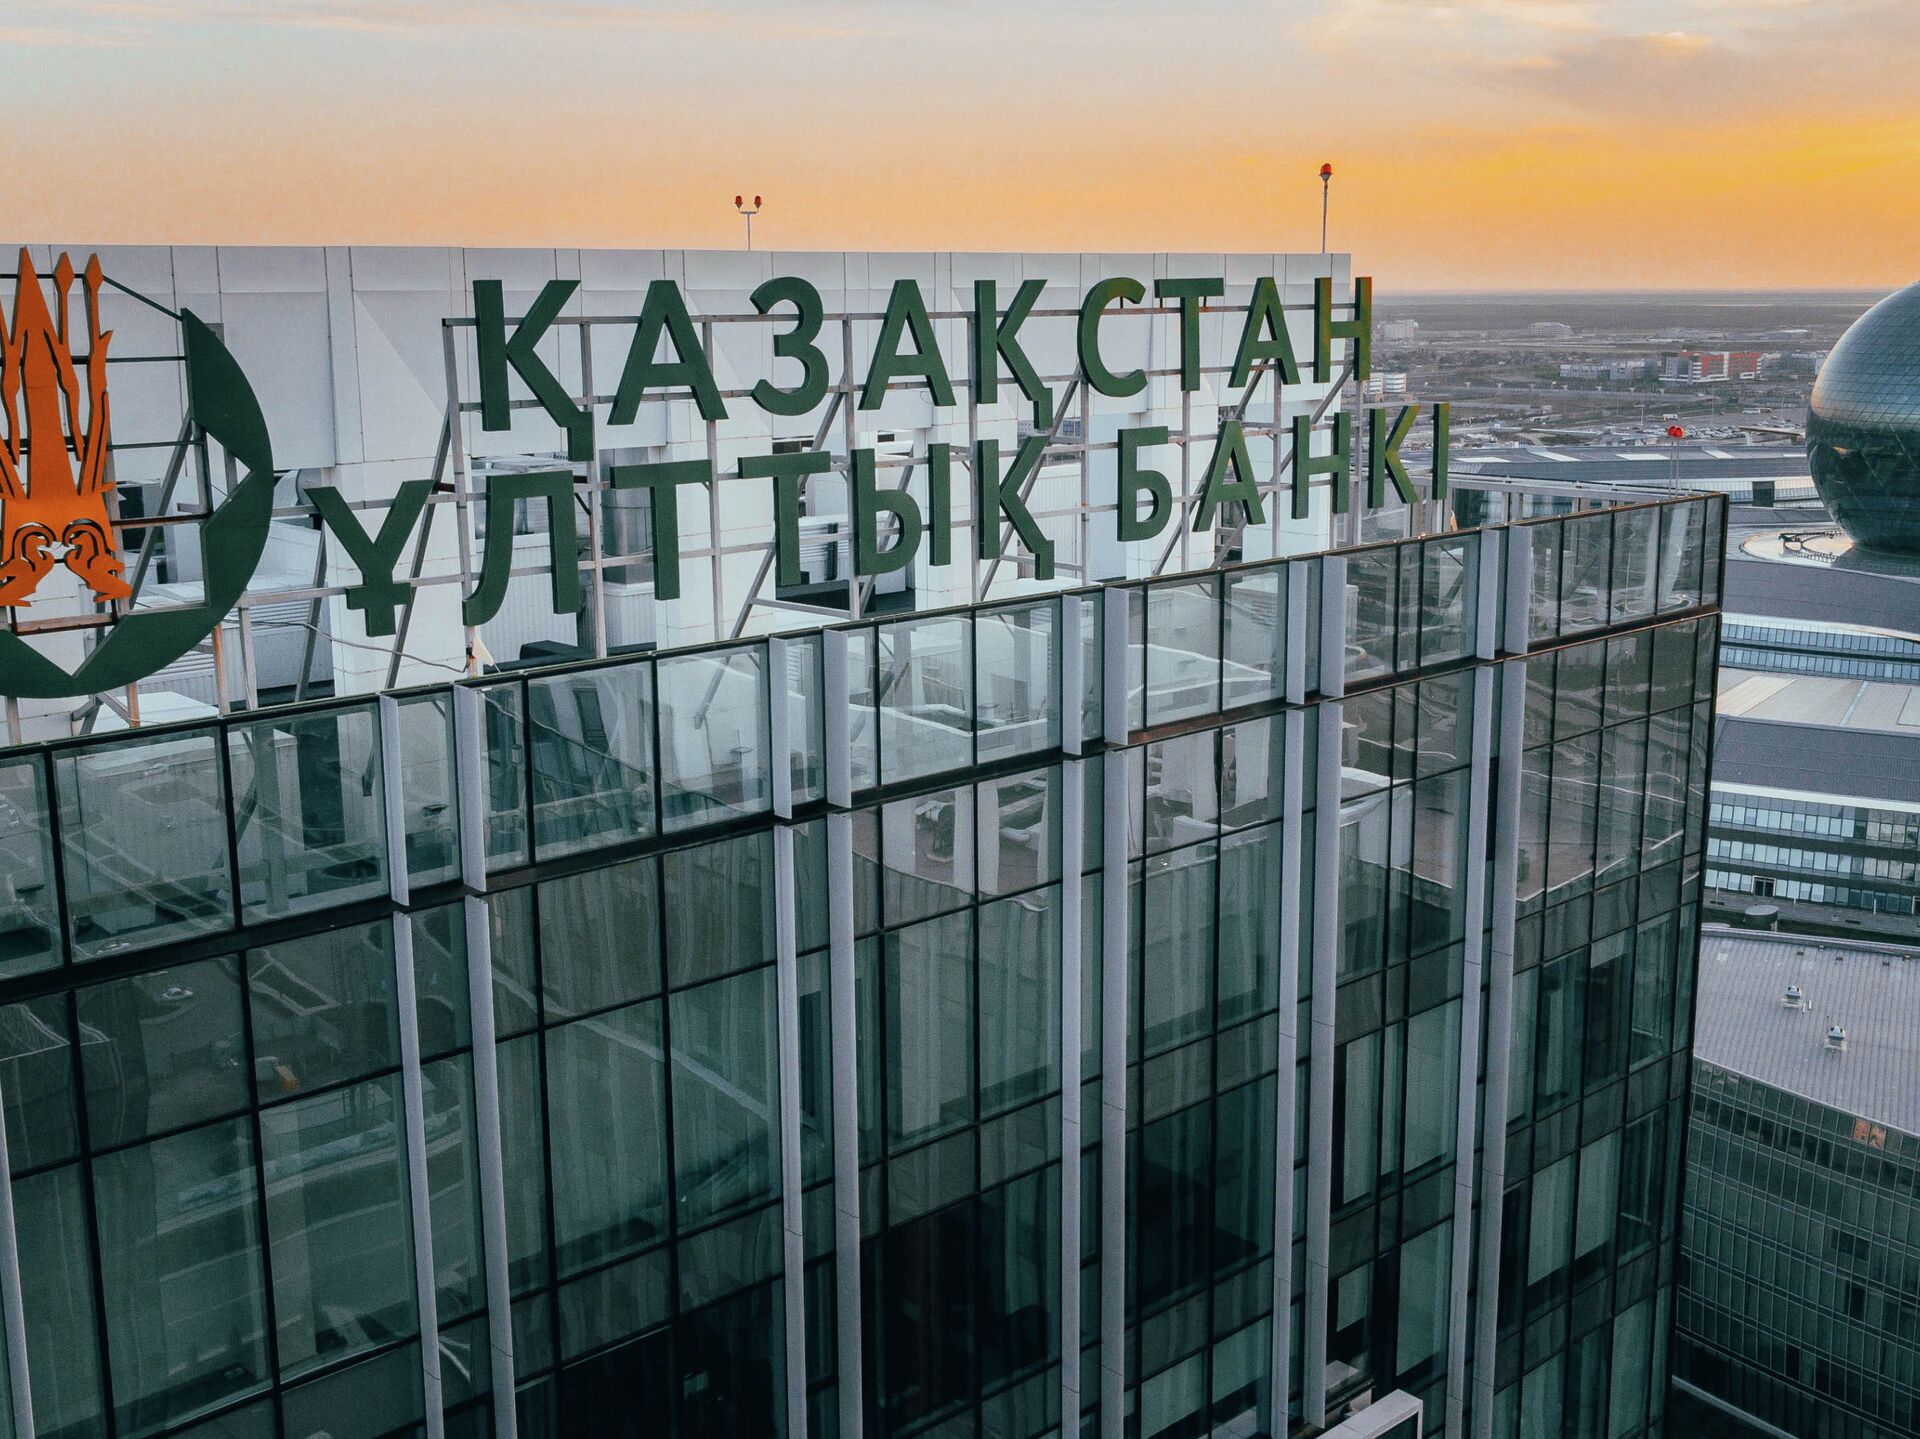 Сайт нац банк казахстан. Центральный банк Казахстана. Нацбанк РК. Национальный банк. Нацбанк лого.